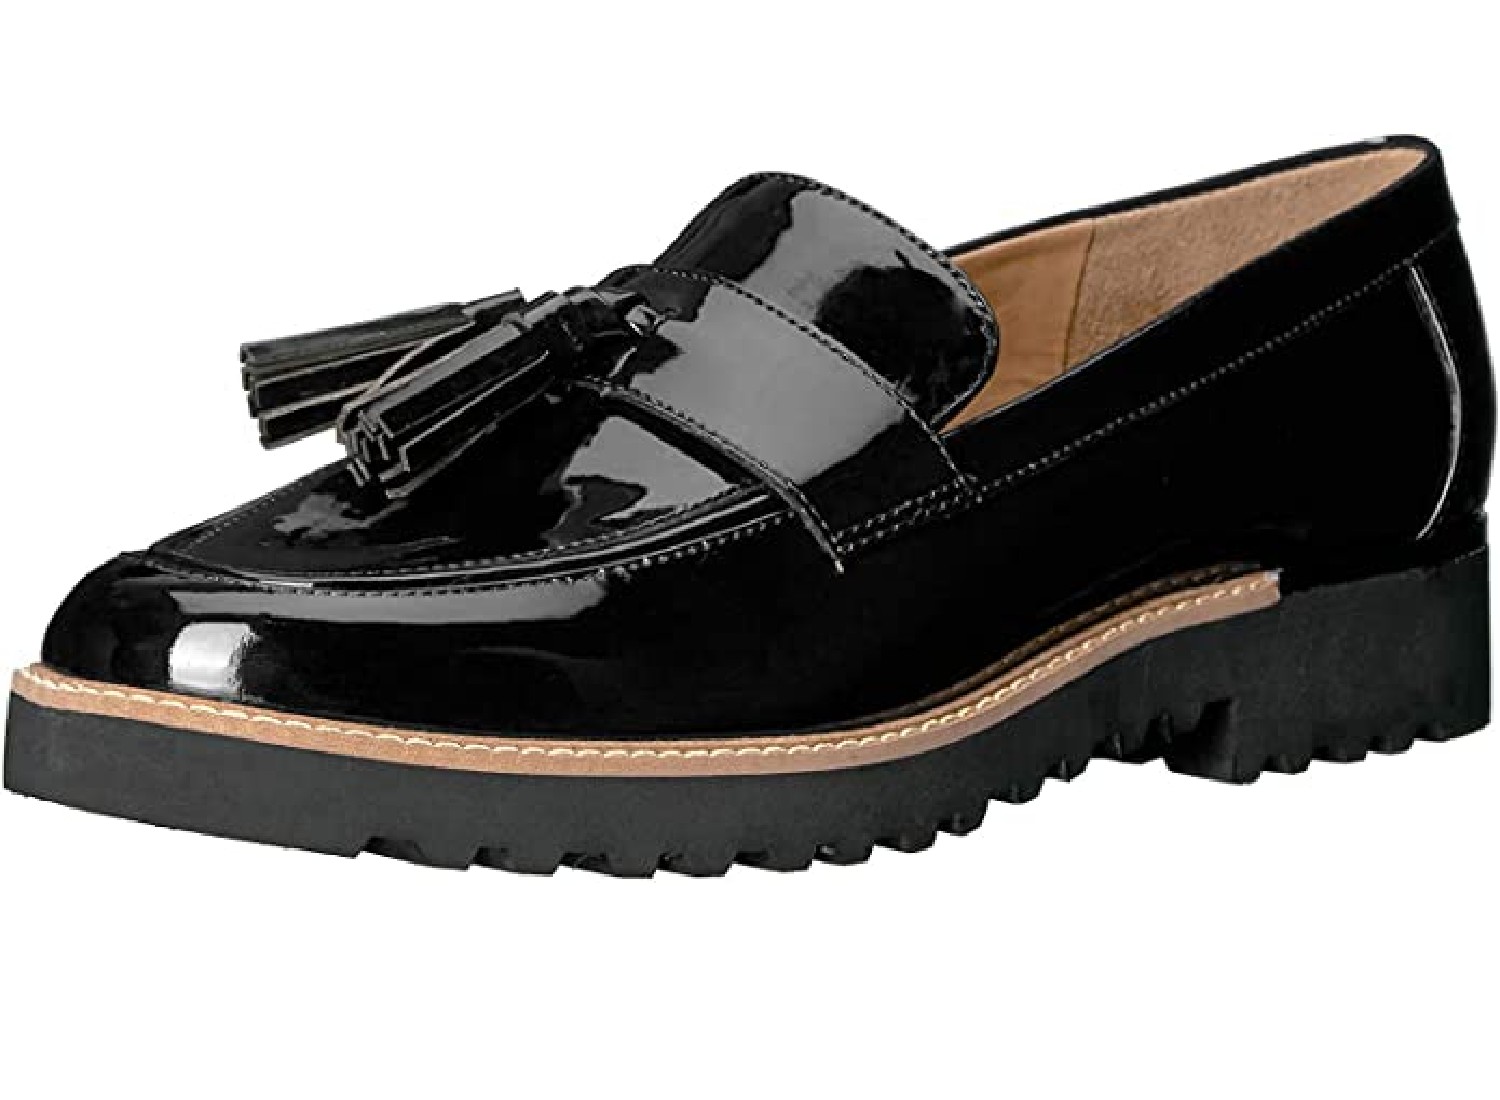 A stylish black loafer.